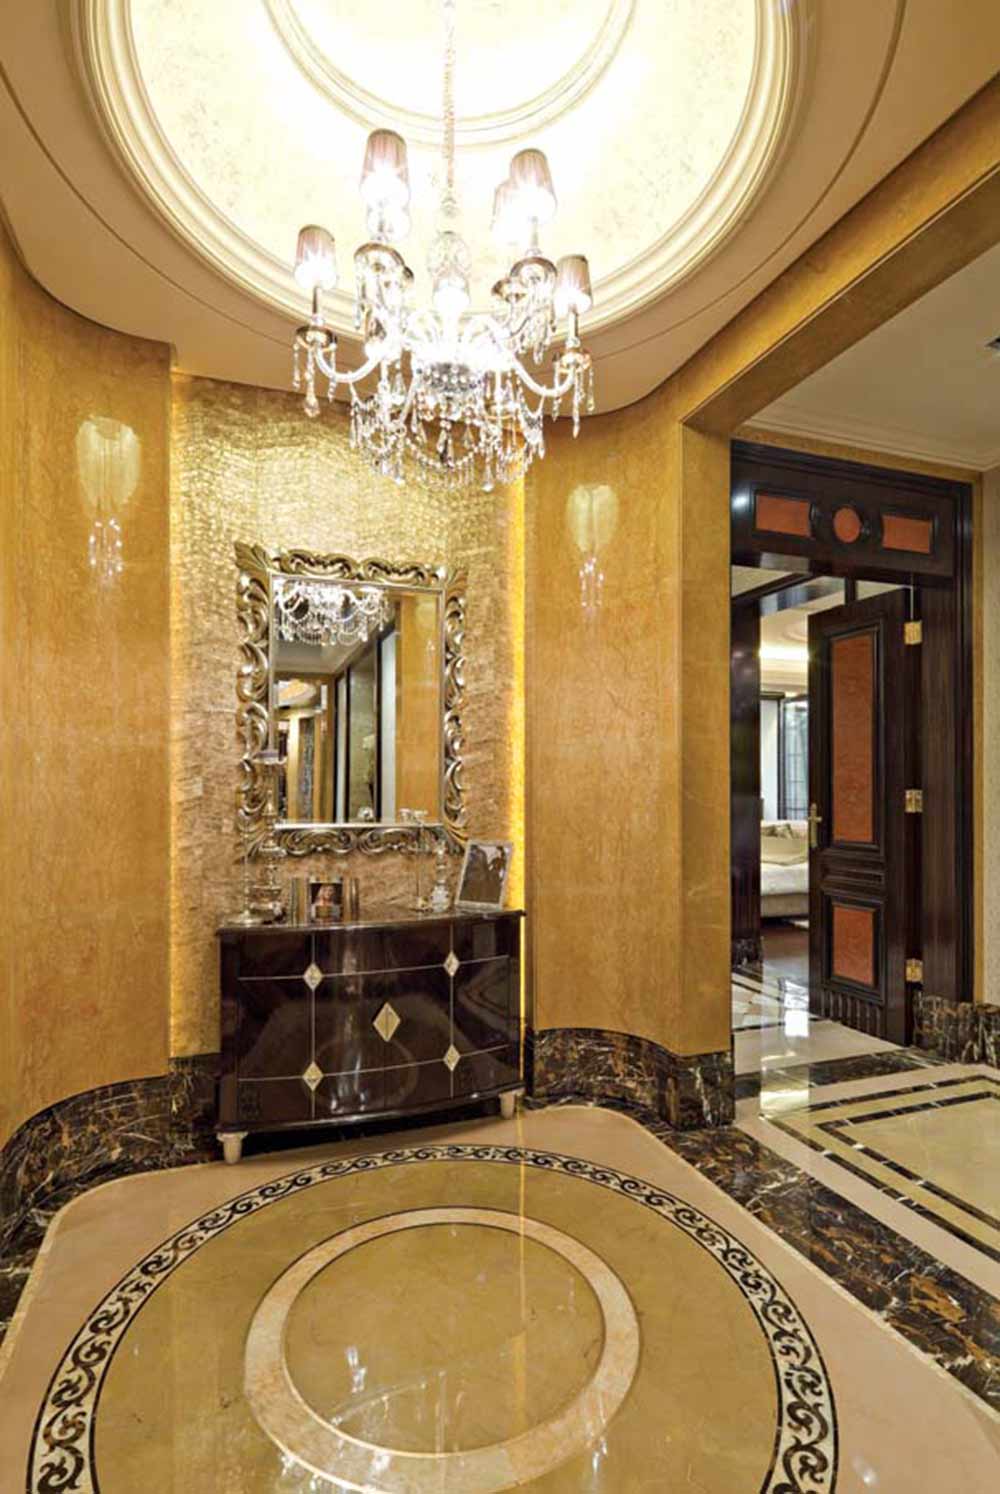 设计师利用华丽的古典欧式设计，将别墅装修的奢华大气。水晶吊灯、罗马柱、复古雕花等元素的应用让这个原本就华丽的空间更显奢华。